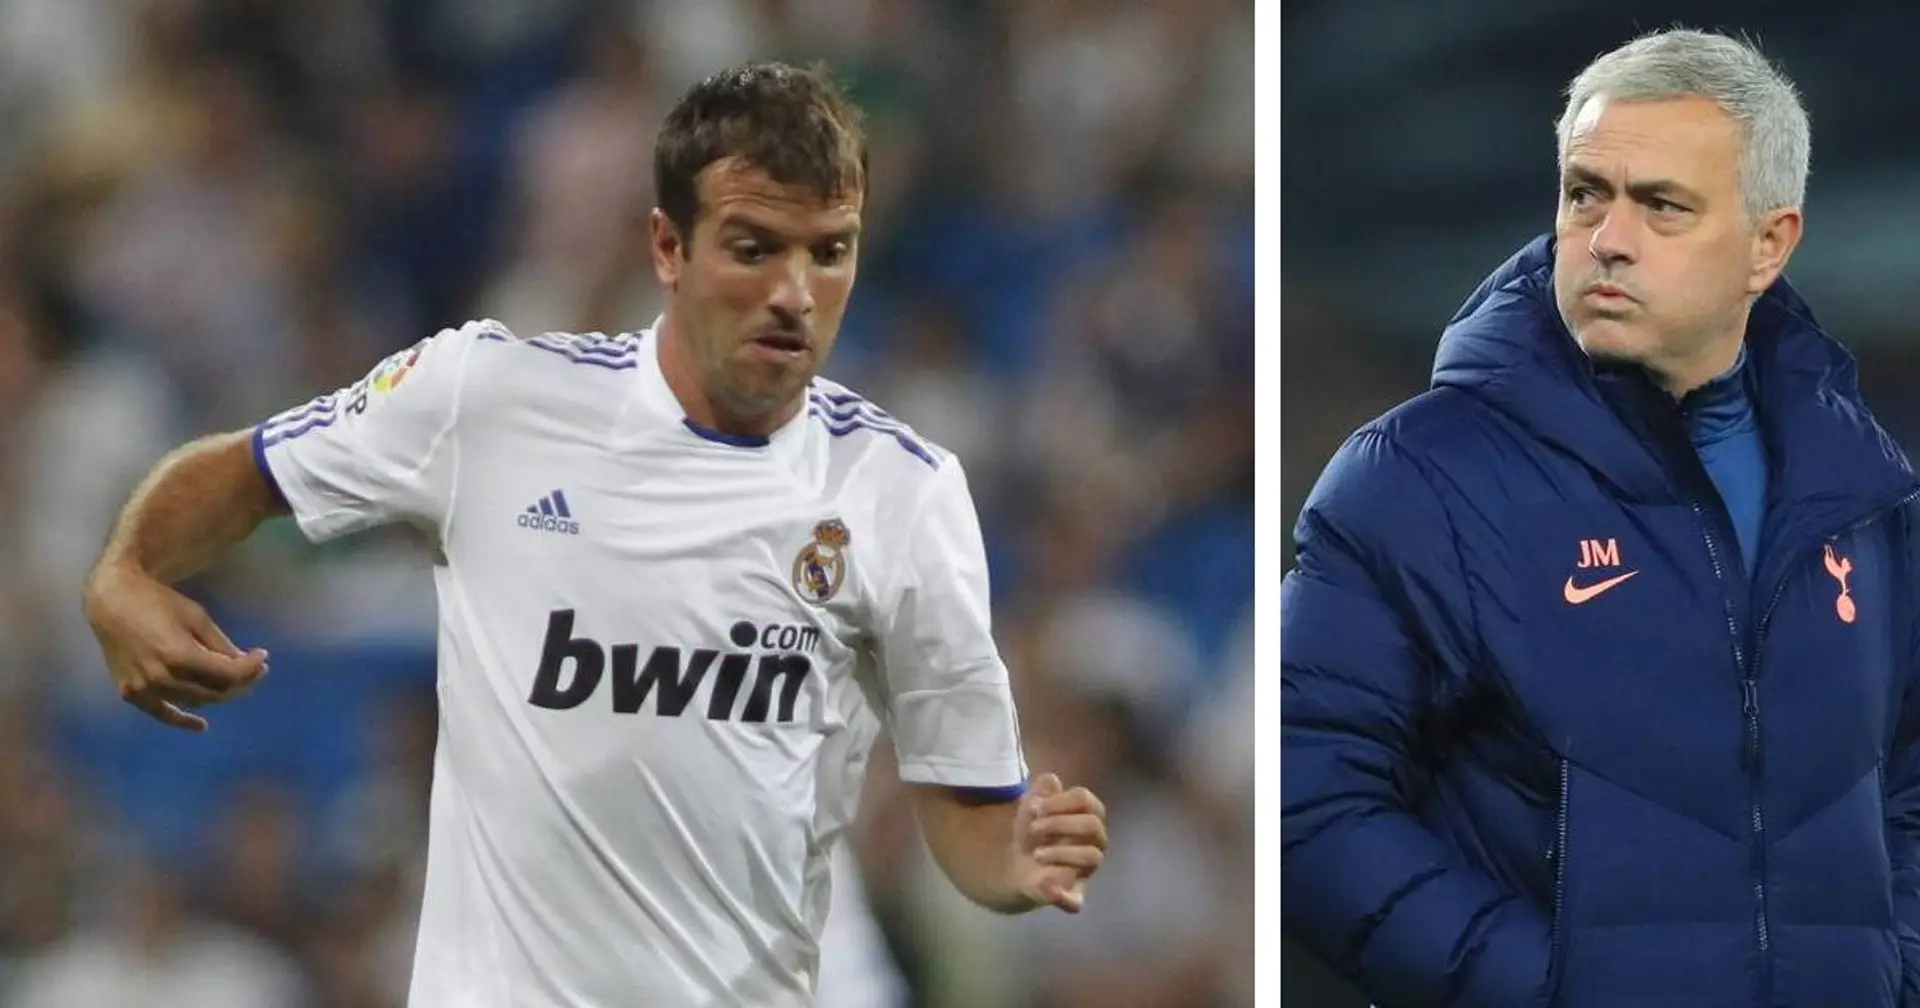 'Jose, you've my number': Van der Vaart calls for full Real Madrid reunion at Tottenham